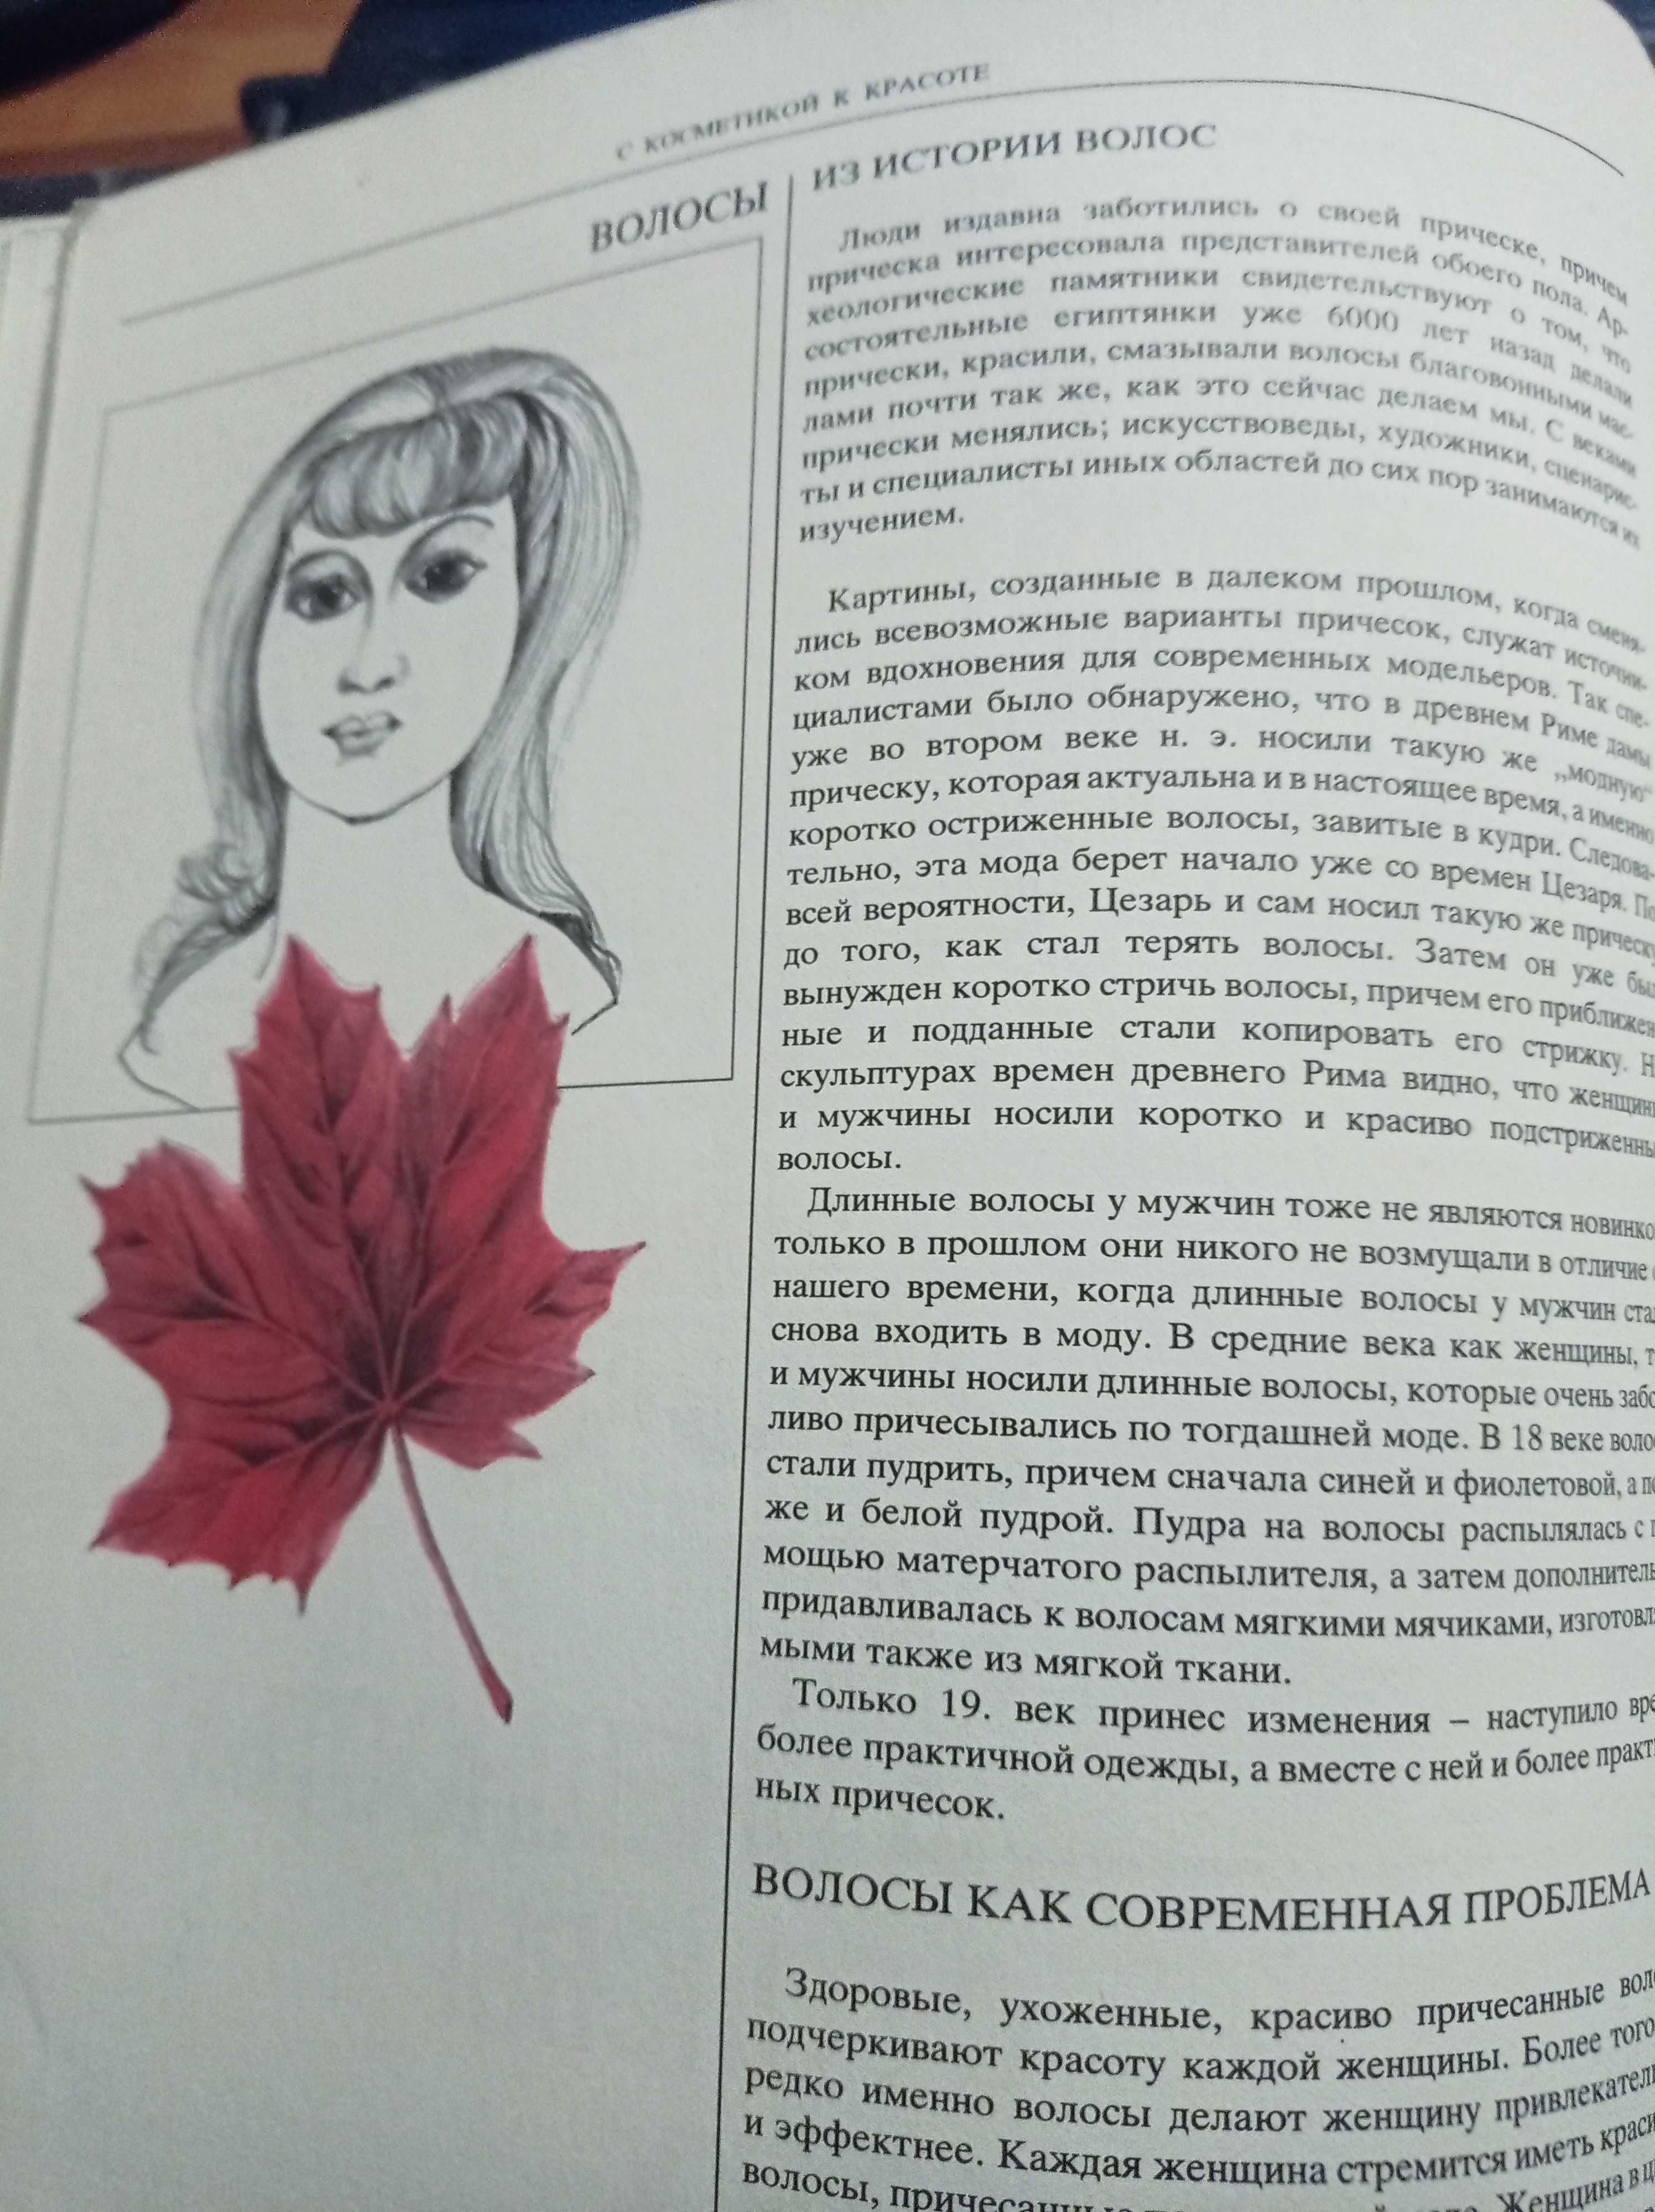 Зузана Хорватова "С косметикой к красоте"